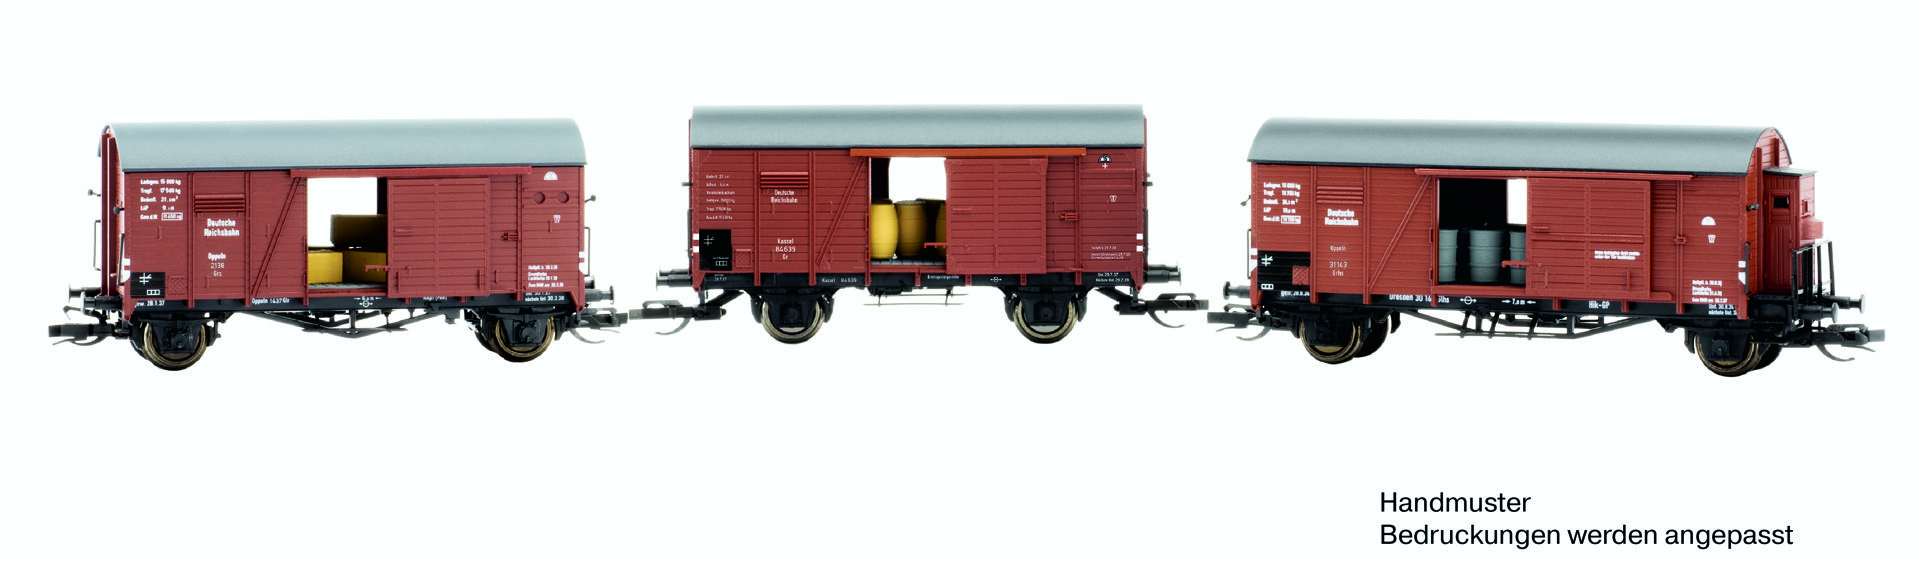 Hädl 115601 - 3er Set gedeckte Güterwagen mit Ladegütern, DRG, Ep.II